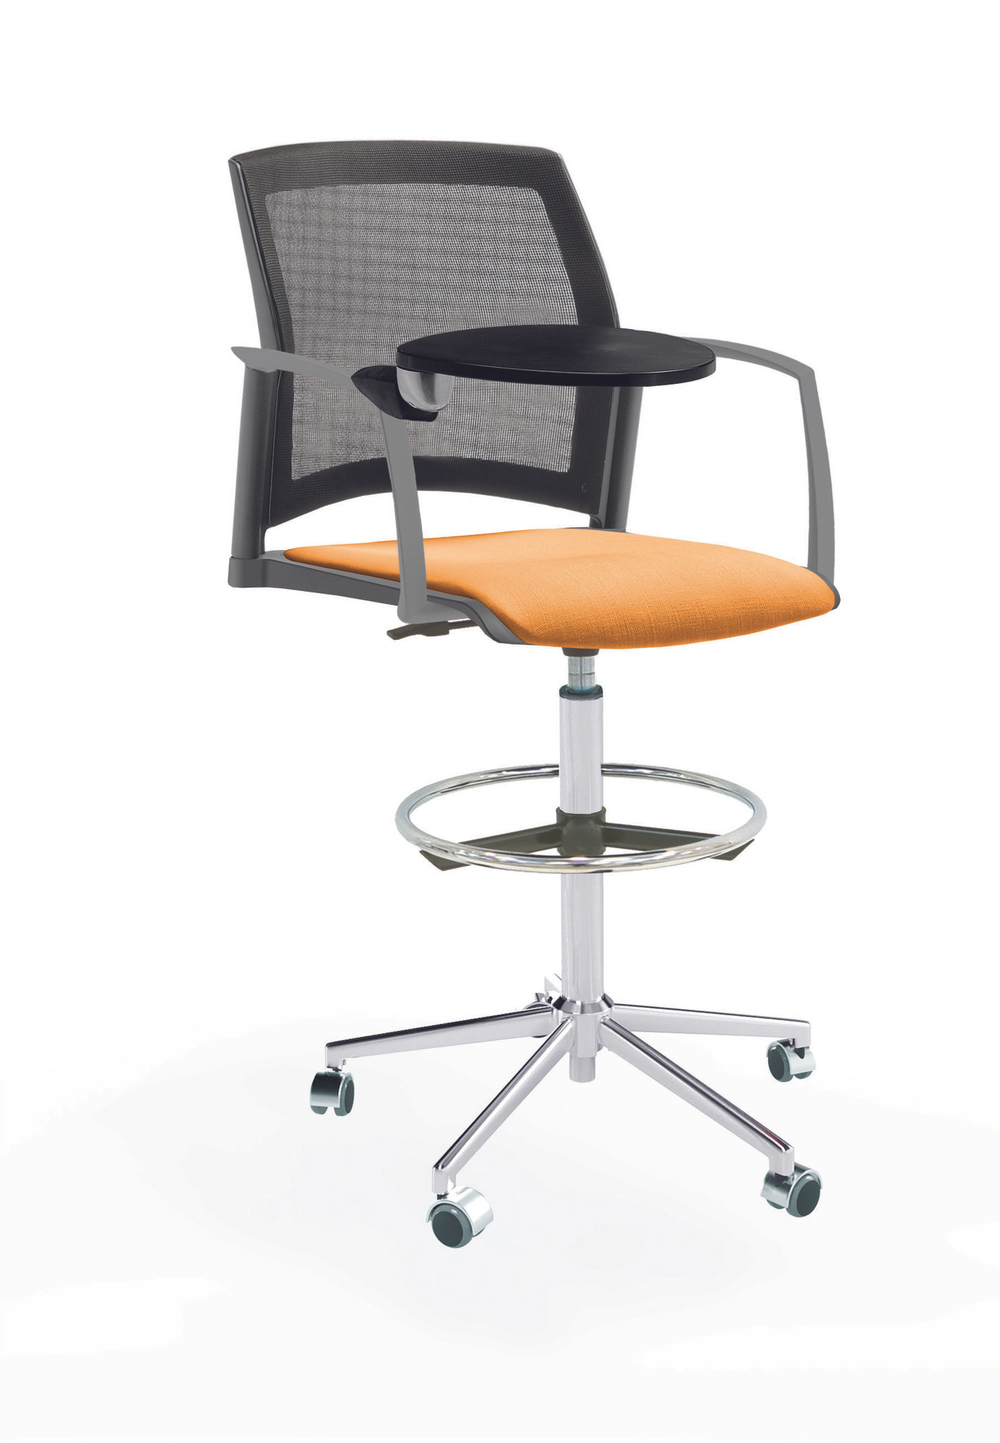 Кресло Rewind каркас хром, пластик серый, база стальная хромированная, с закрытыми подлокотниками и пюпитром, сиденье оранжевое, спинка-сетка